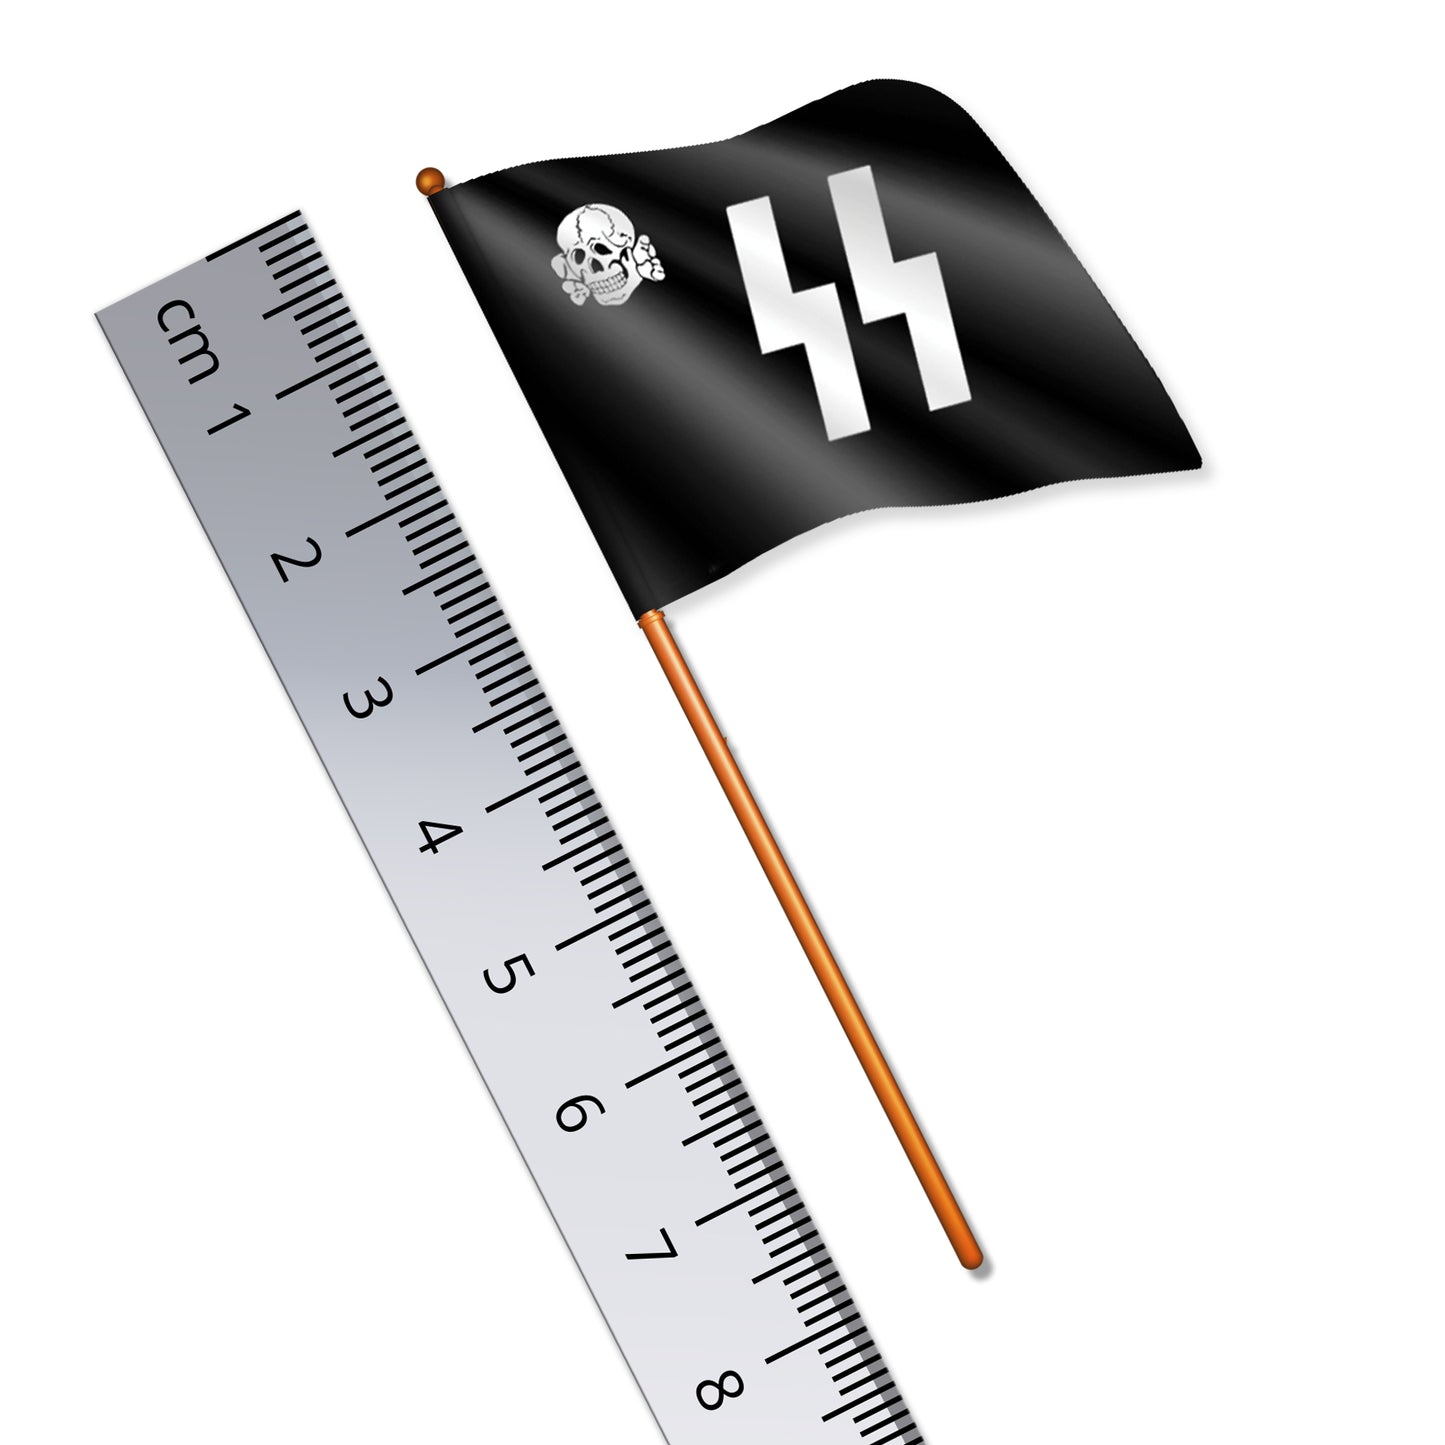 German SS 'Schutzstaffel' Flag (World War II)